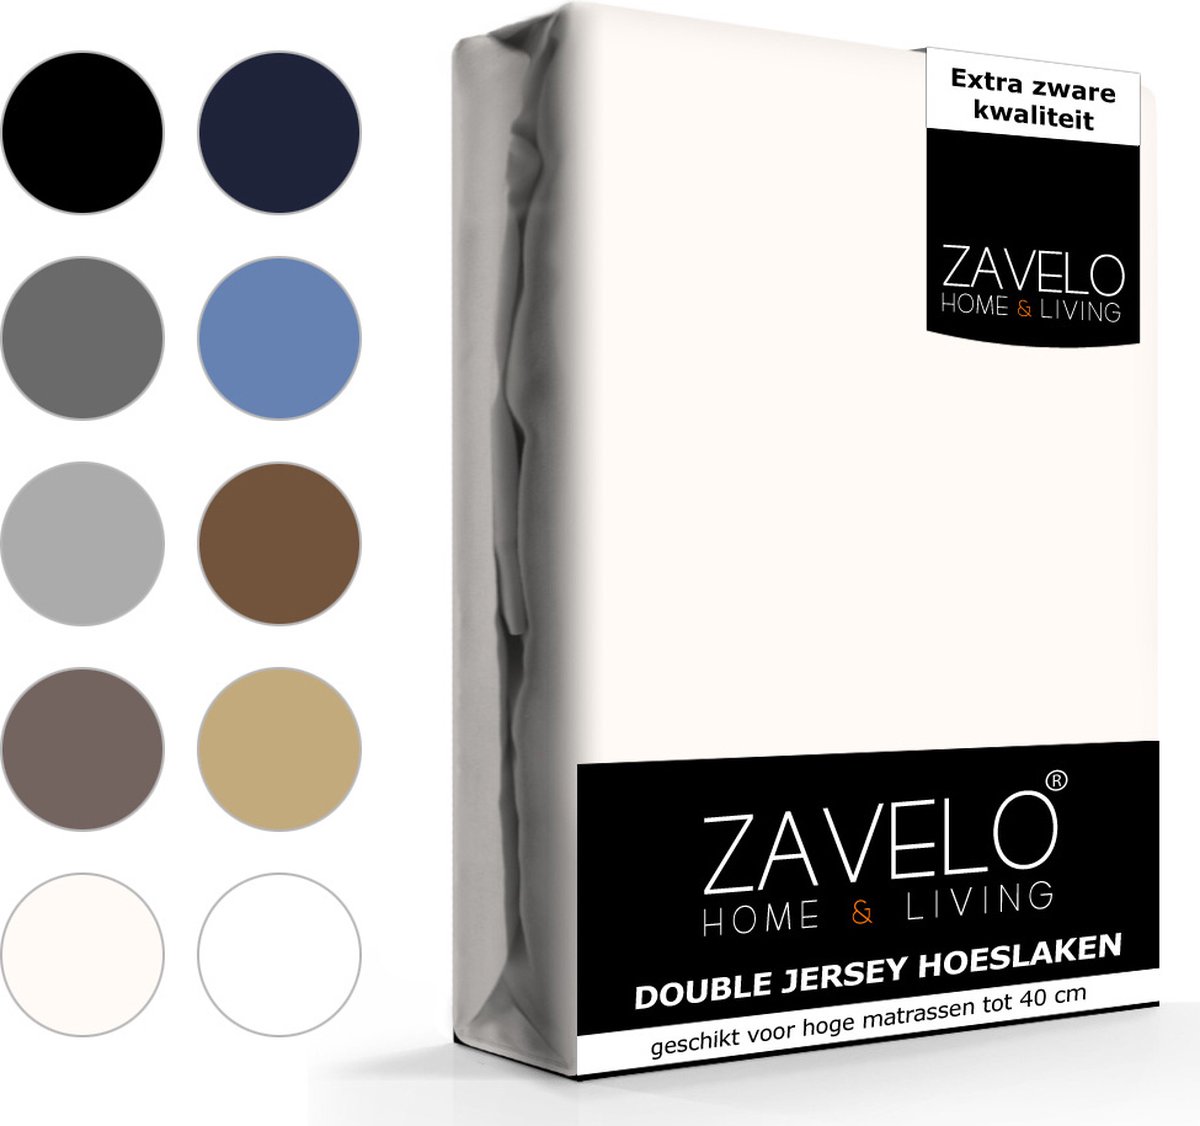 Slaaptextiel Zavelo Double Jersey Hoeslaken Creme-1-persoons (90x200 Cm) - Beige